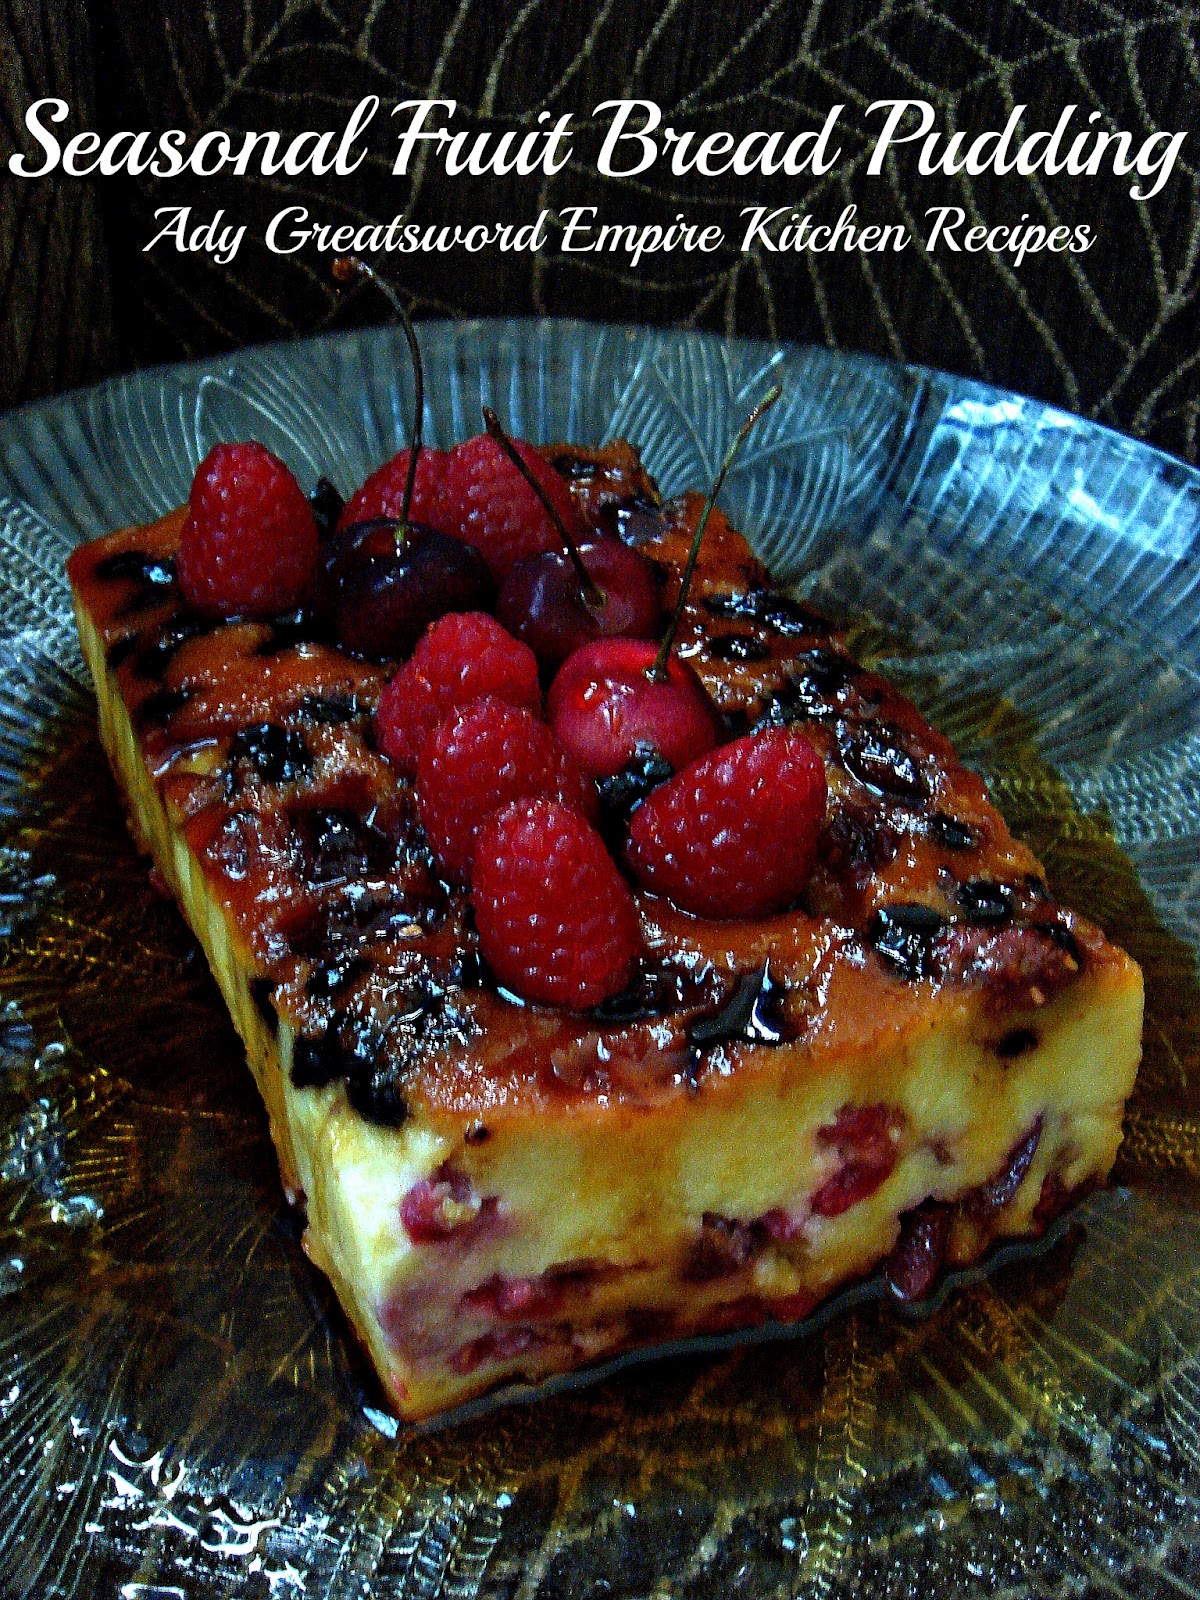 Ady Greatsword Empire Kitchen Recipes: Seasonal Fruit 